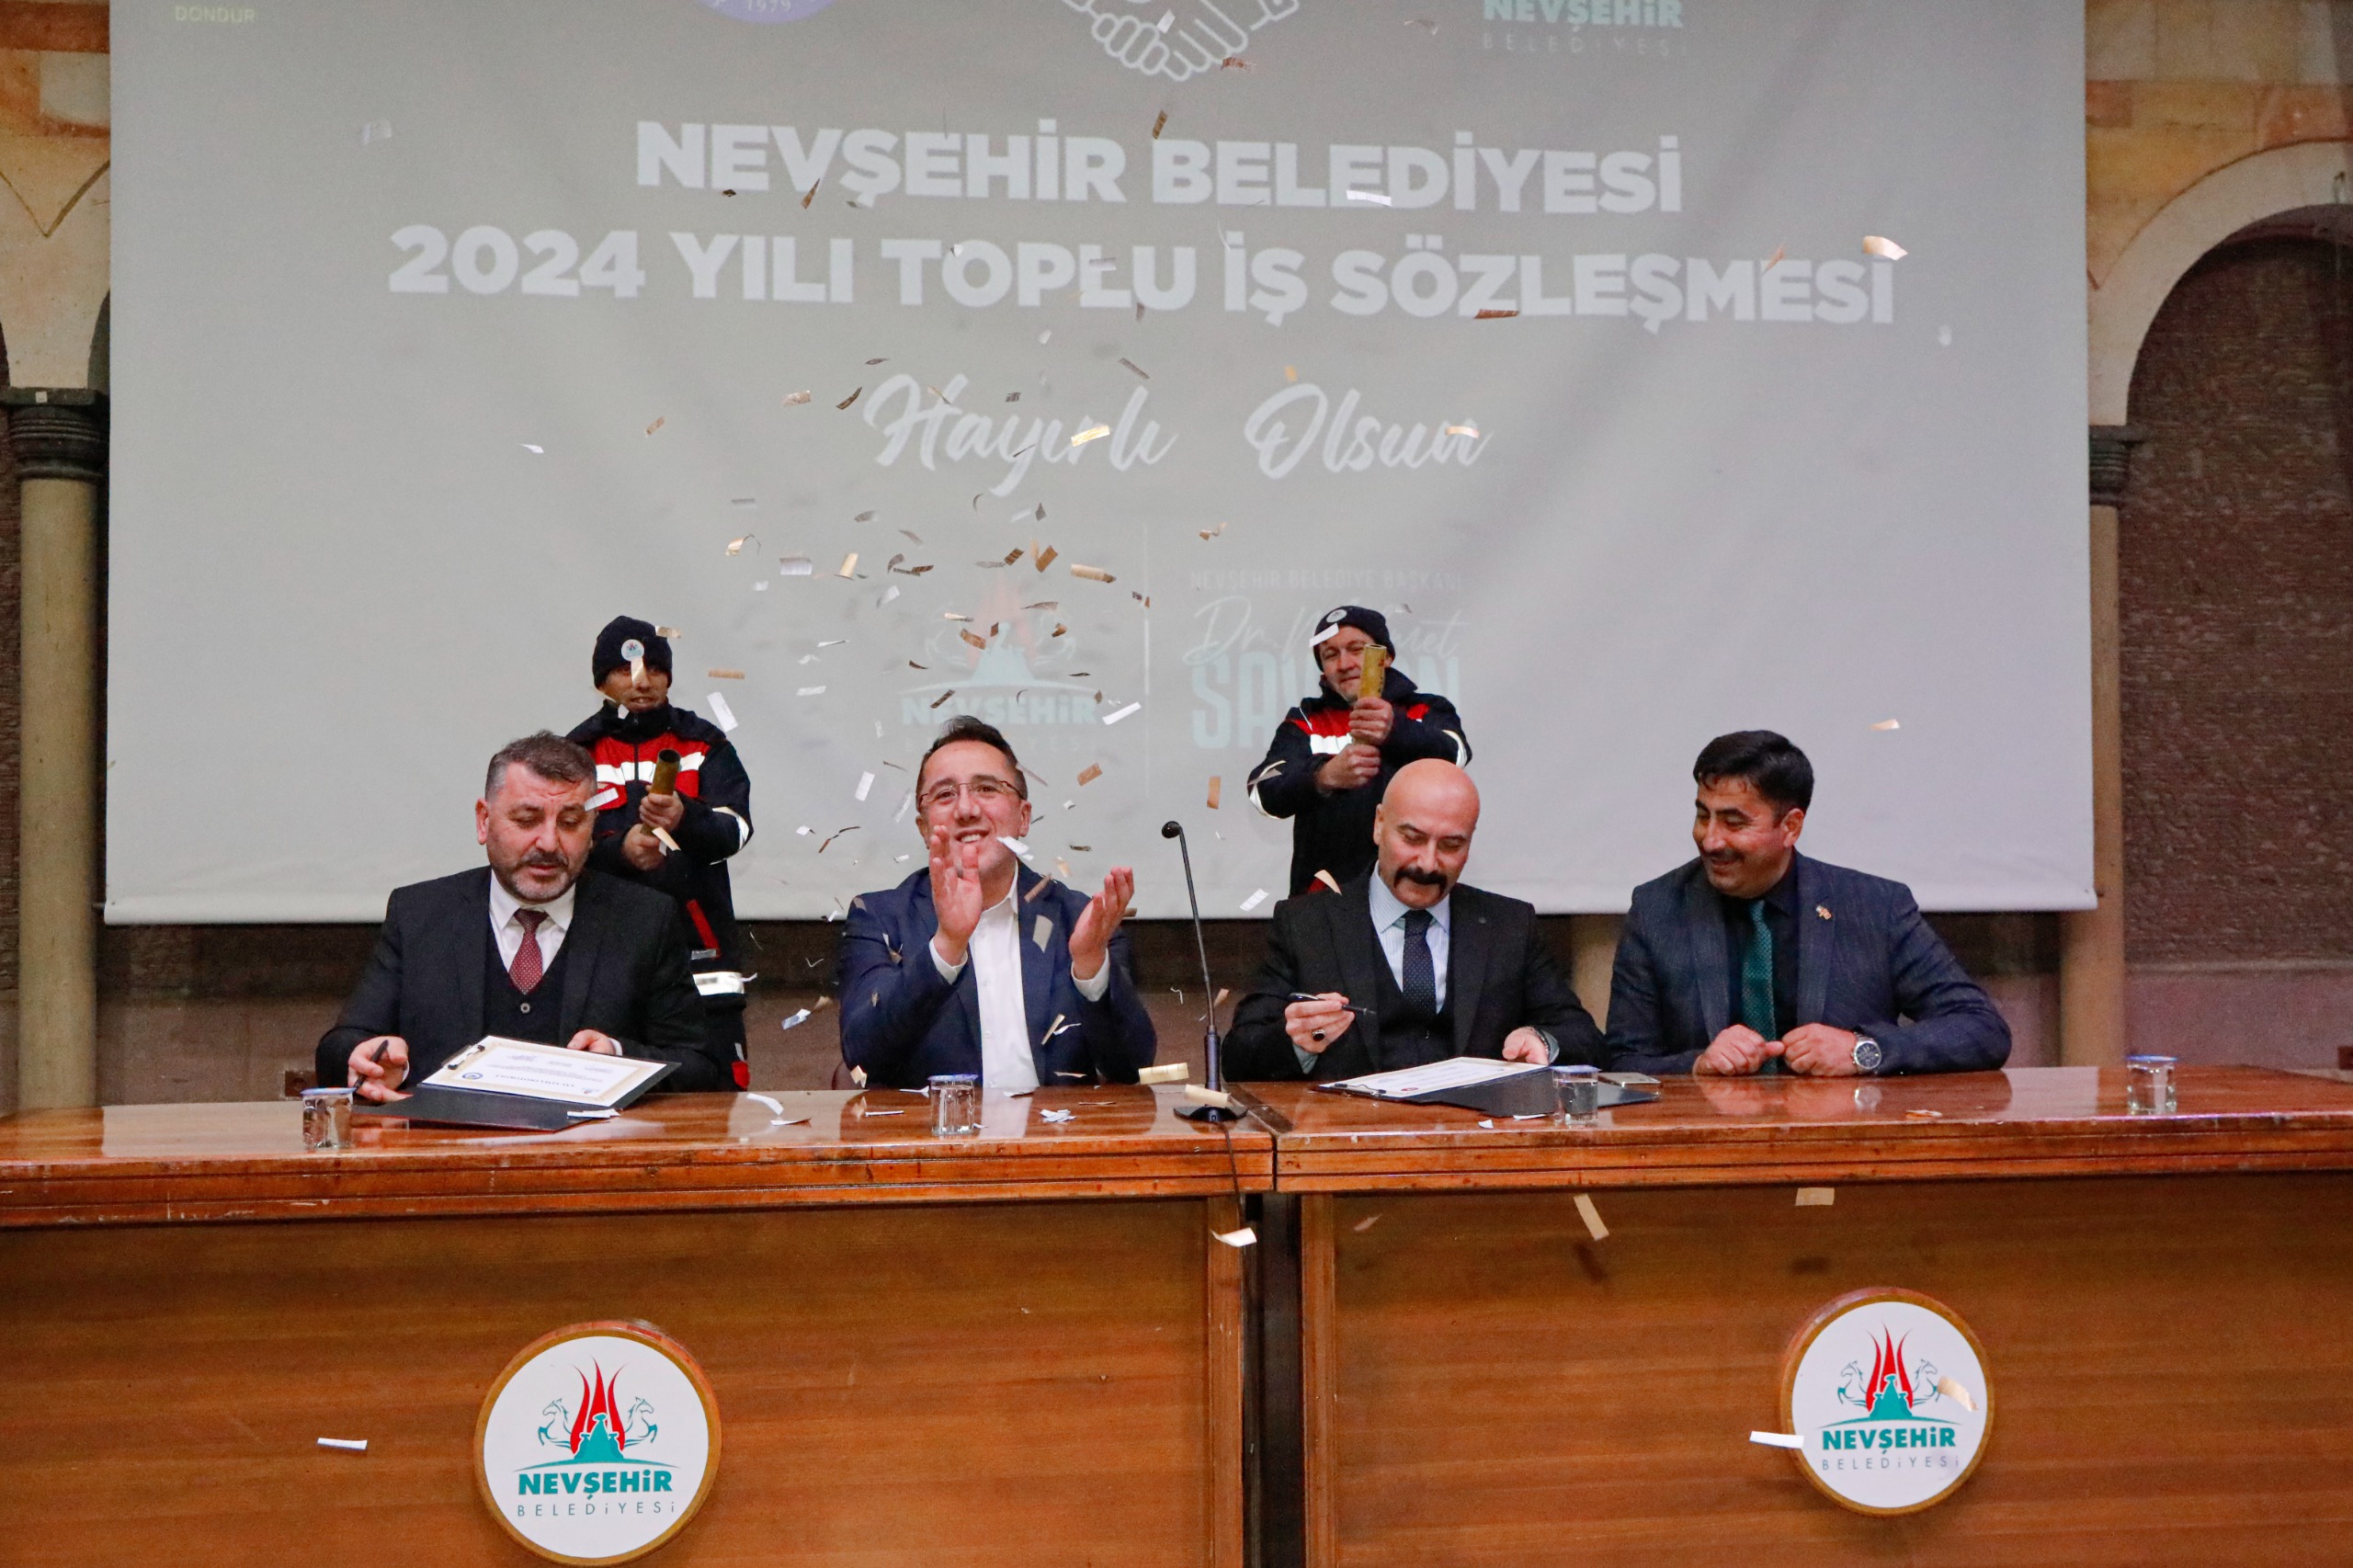 Nevşehir Belediyesi personelinin maaşı yüzde 70 arttı - Muşkara Haber -  Nevşehir Haber